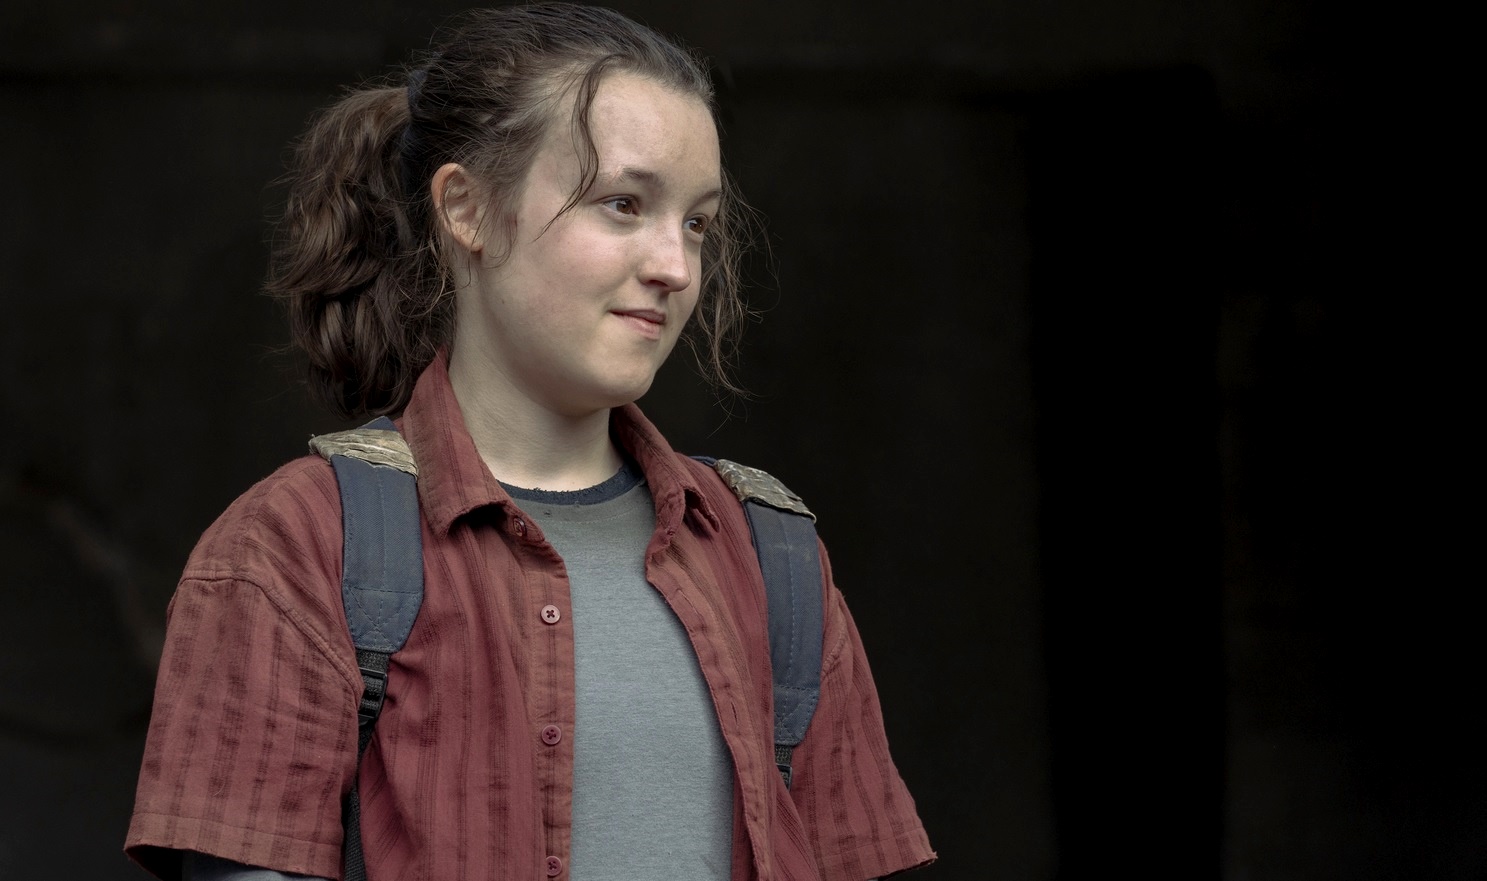 The Last of Us: Atriz original de Ellie não poupa elogios a Bella